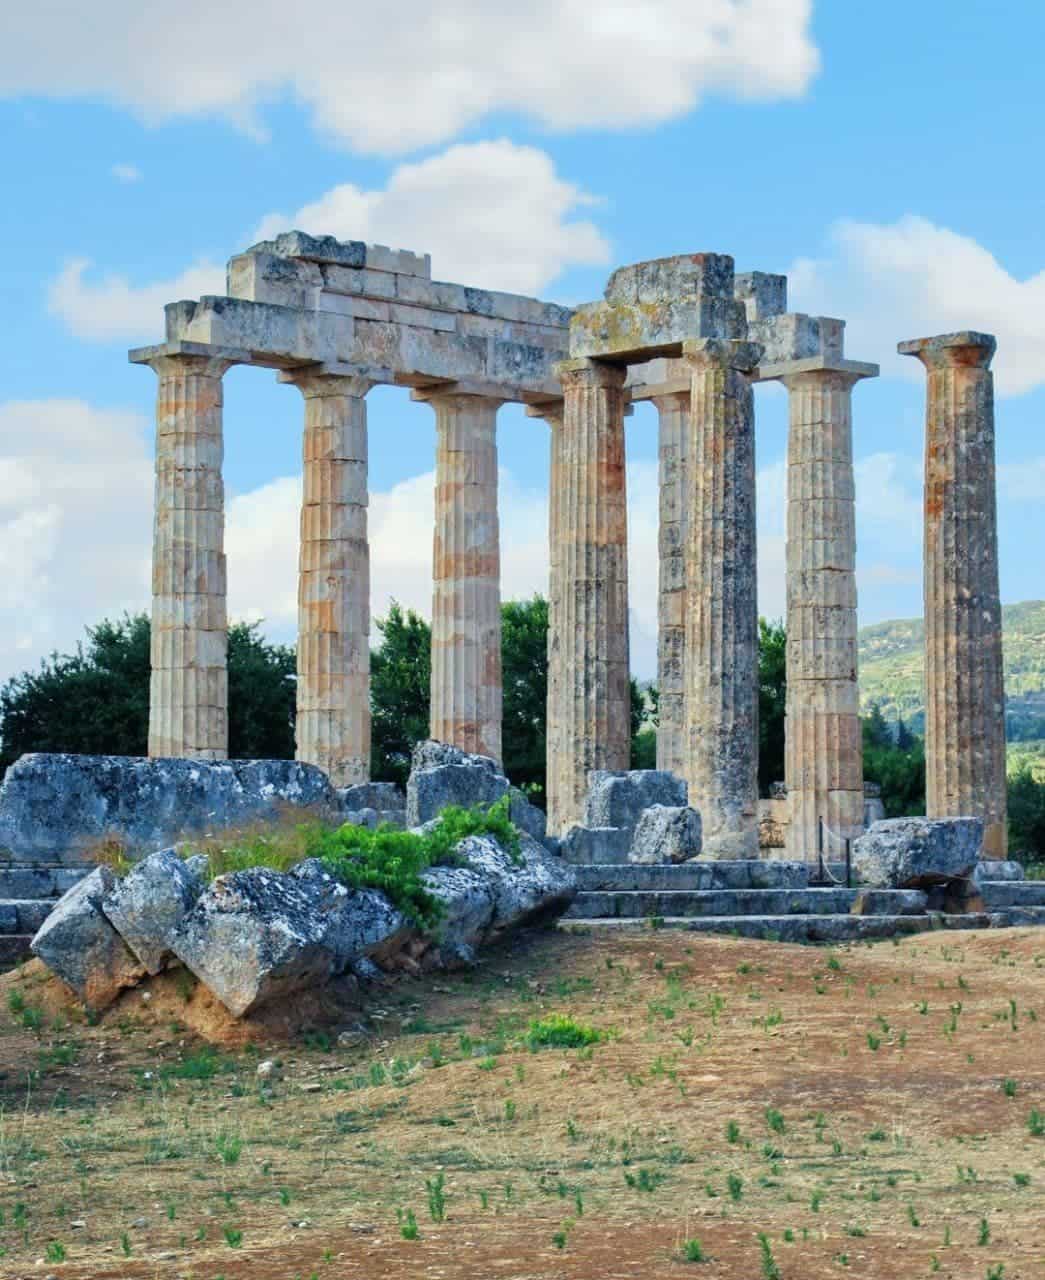 The temple of Zeus at Nemea Greece